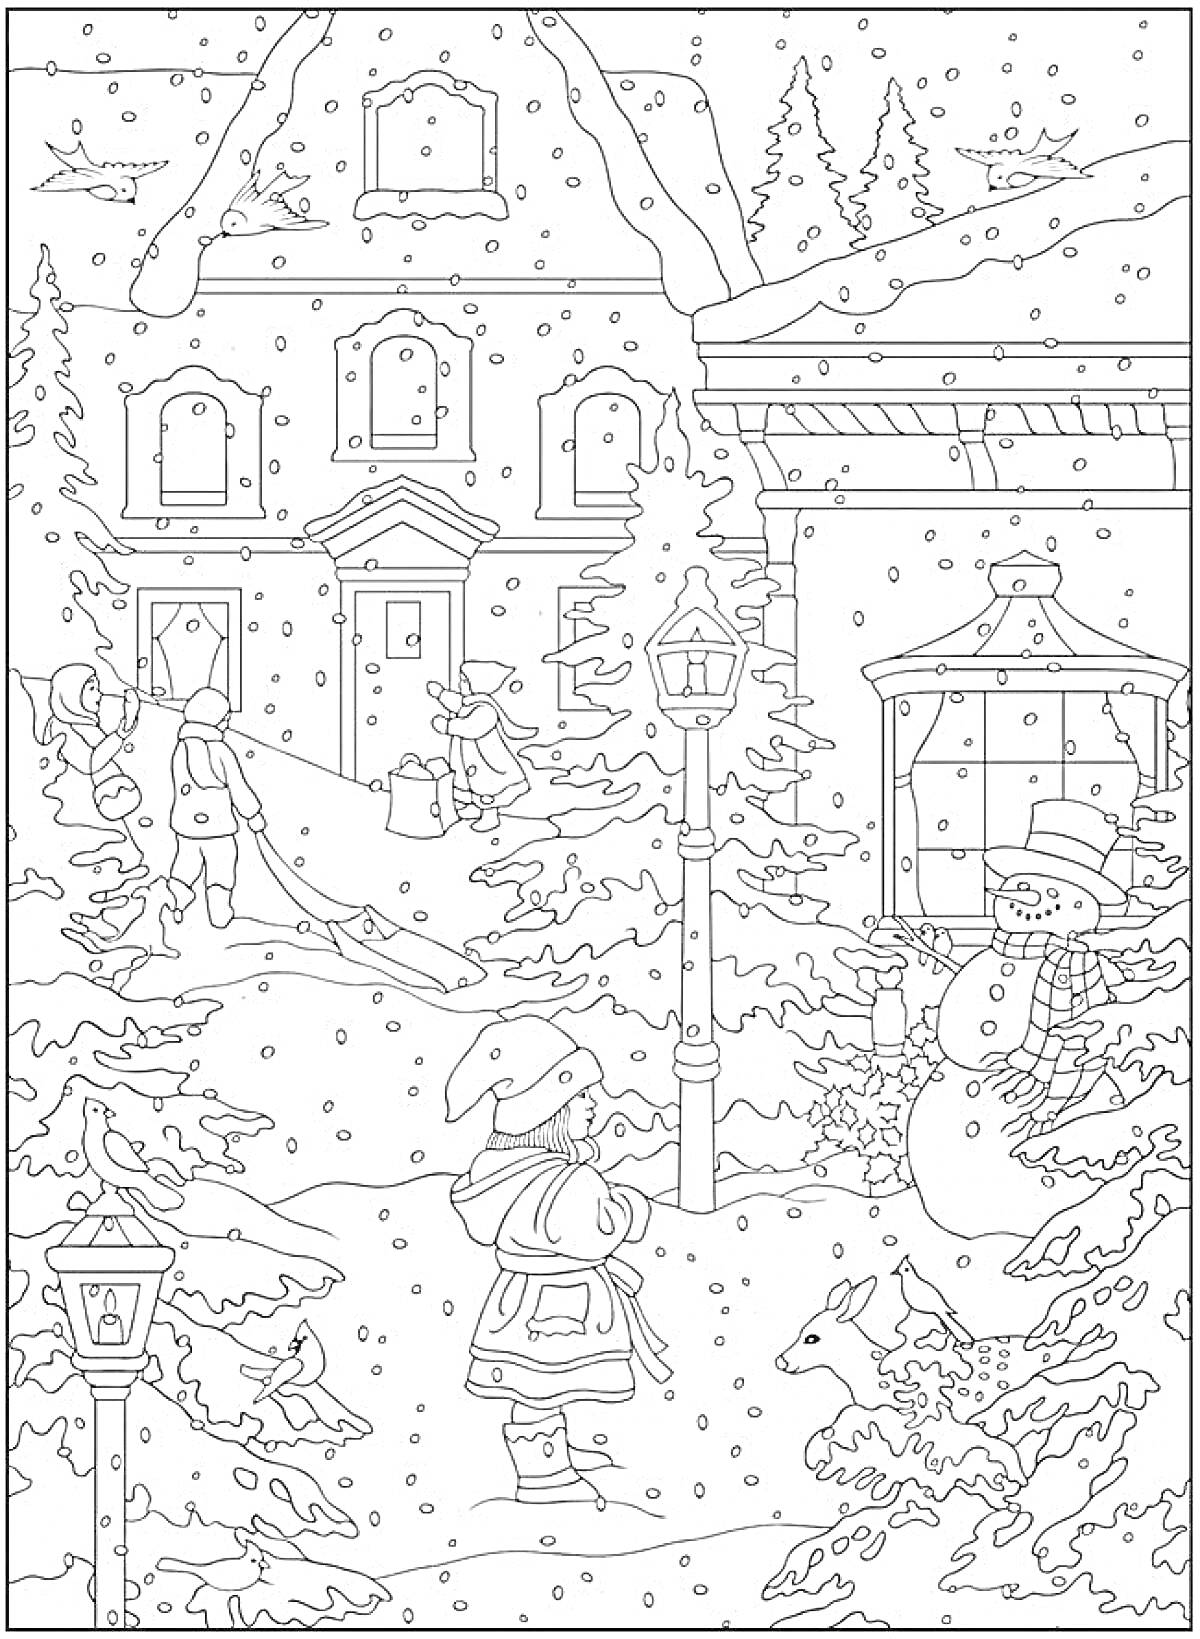 Раскраска Зимняя антистресс раскраска с домами, заснеженной улицей, детьми, снеговиком, деревьями и фонарными столбами